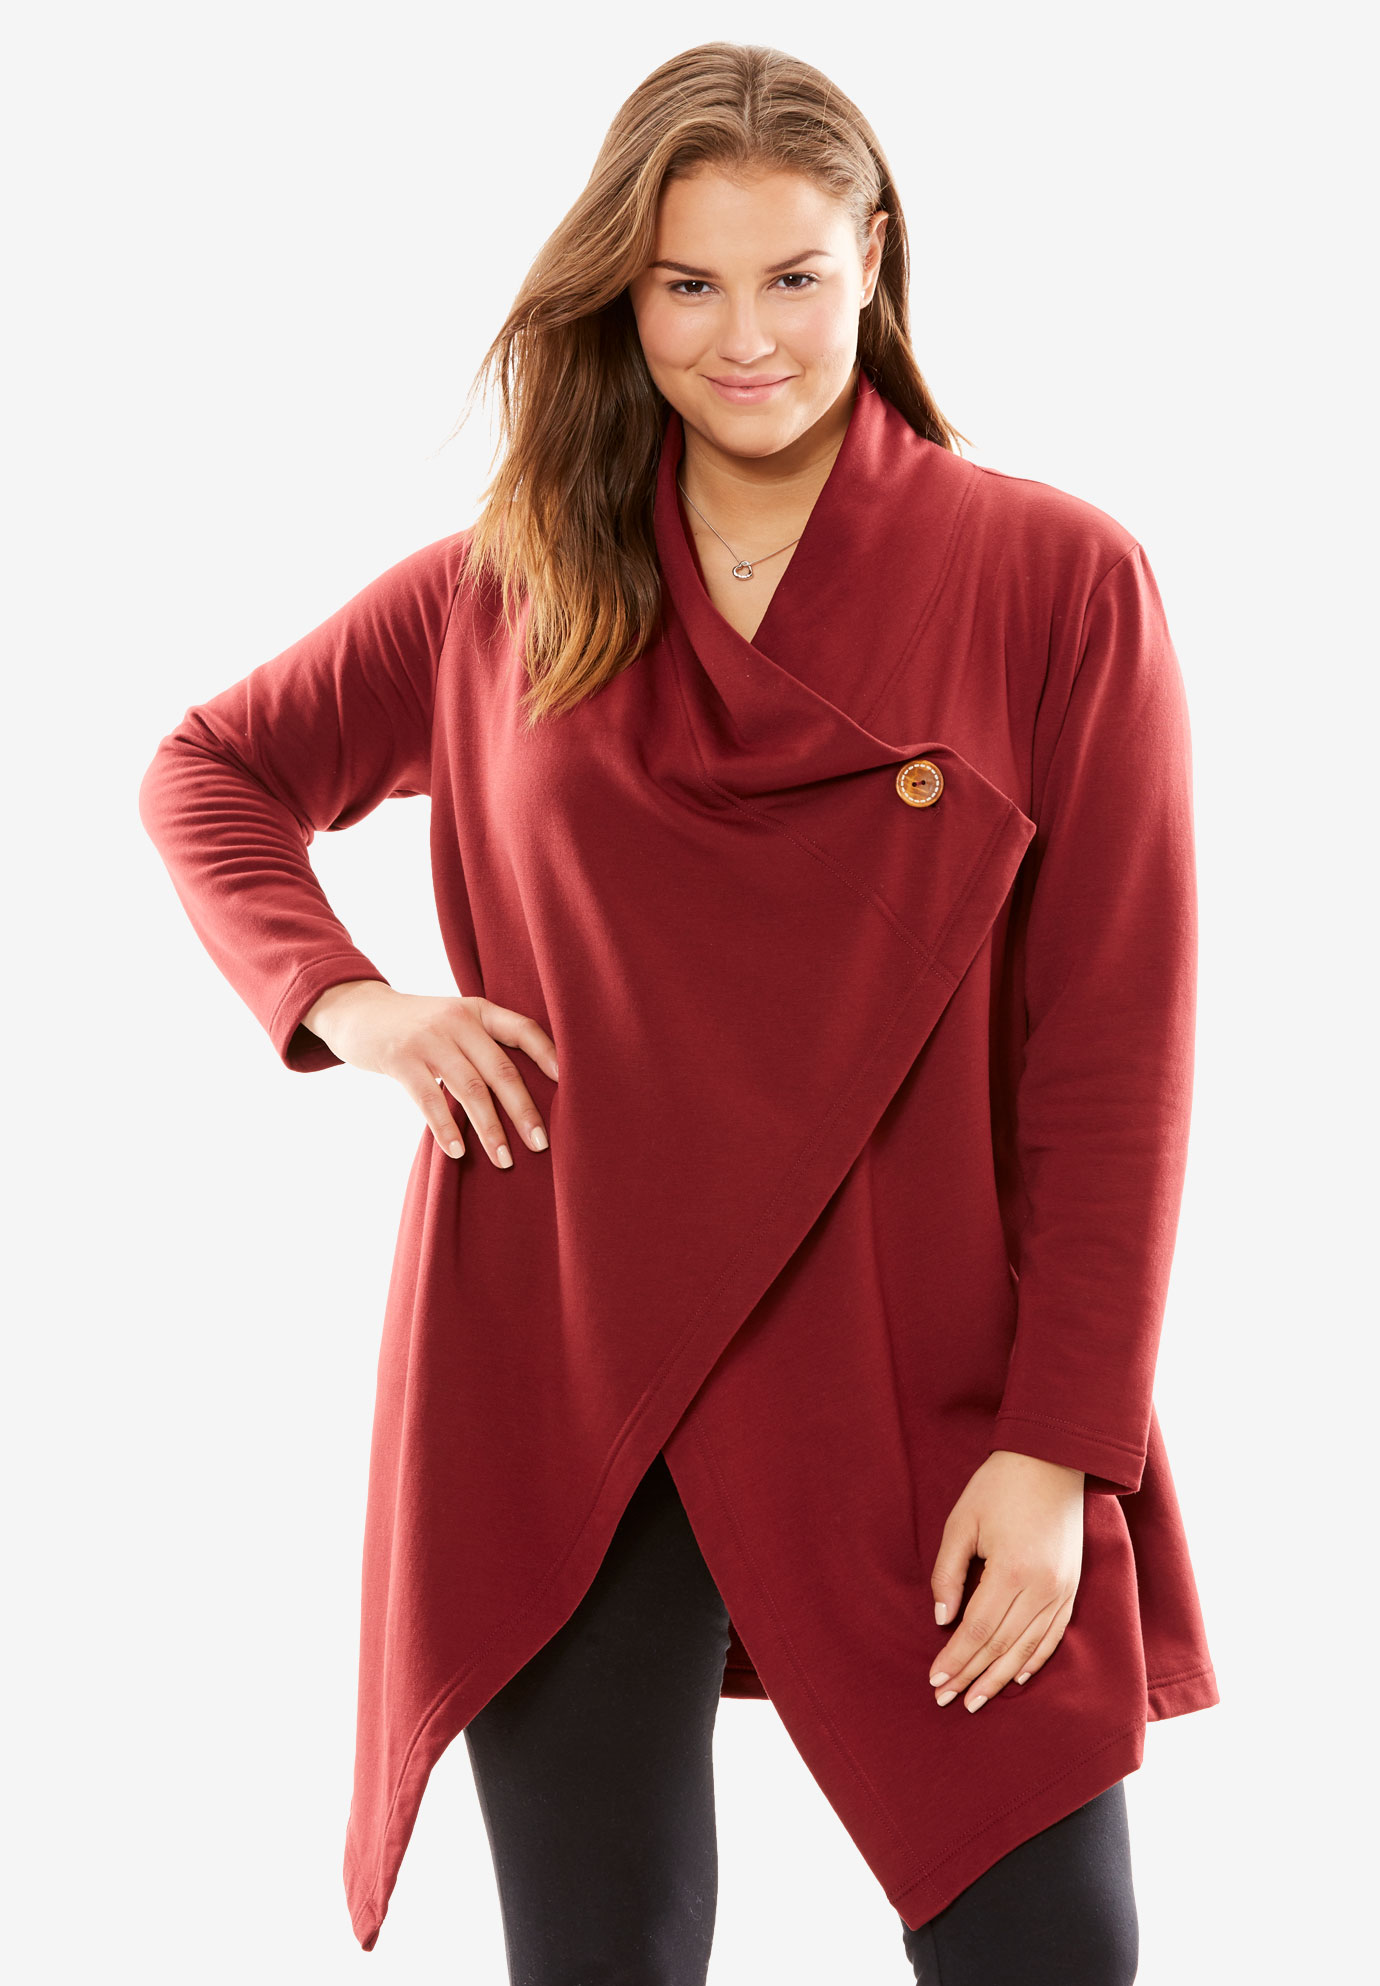 Fleece Wrapped Jacket Robe by Dreams & Co.®| Plus Size Sleepwear ...